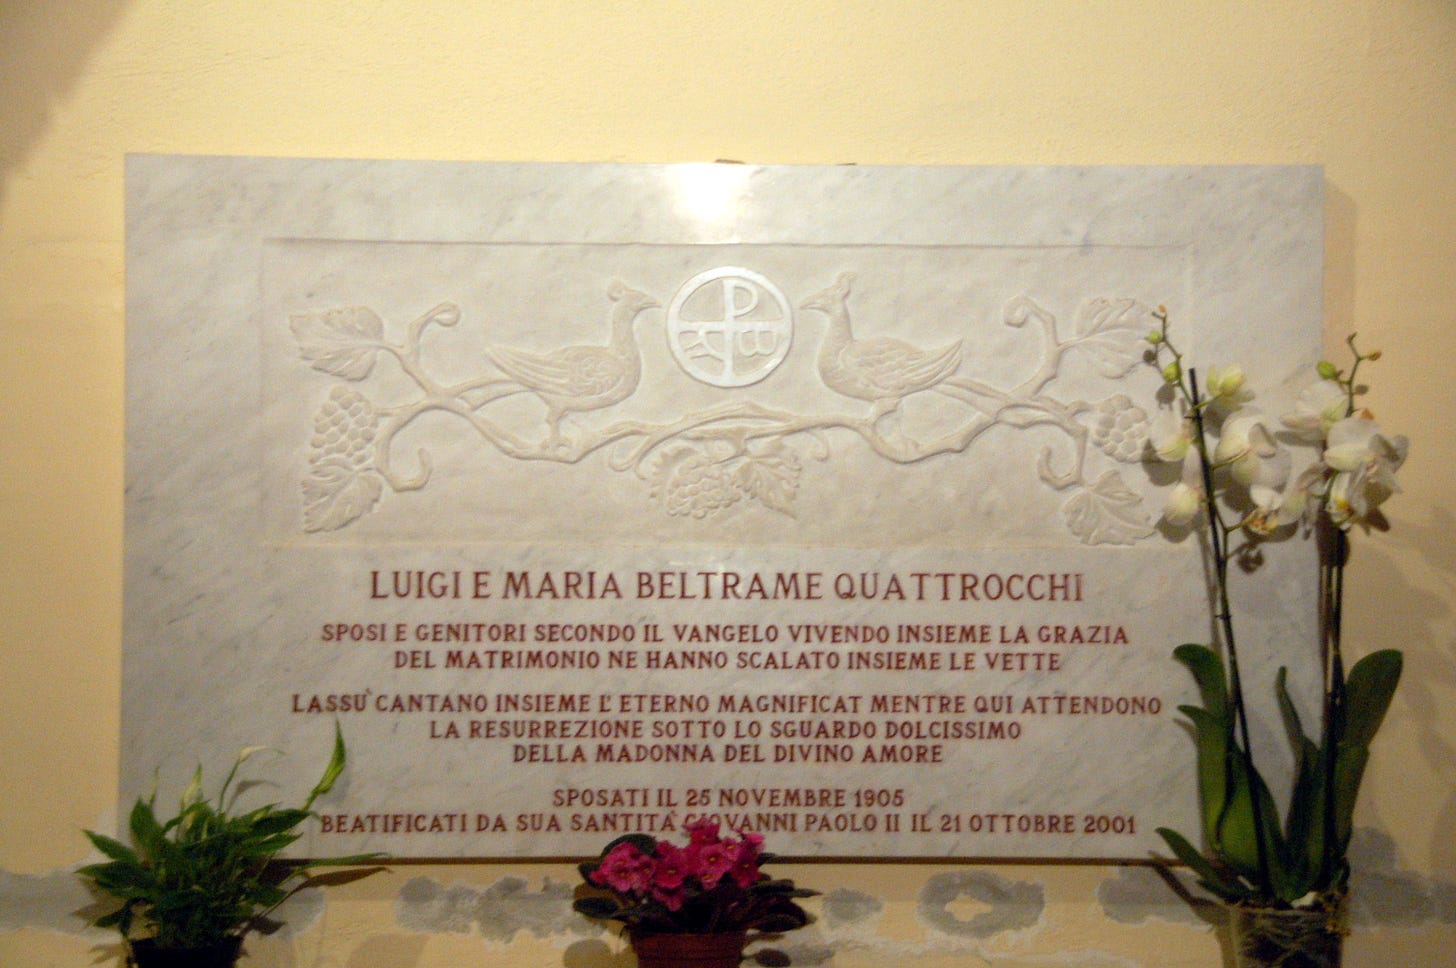 Płyta nagrobna bł. Marii i Luigiego Beltrame Quattrocchi.